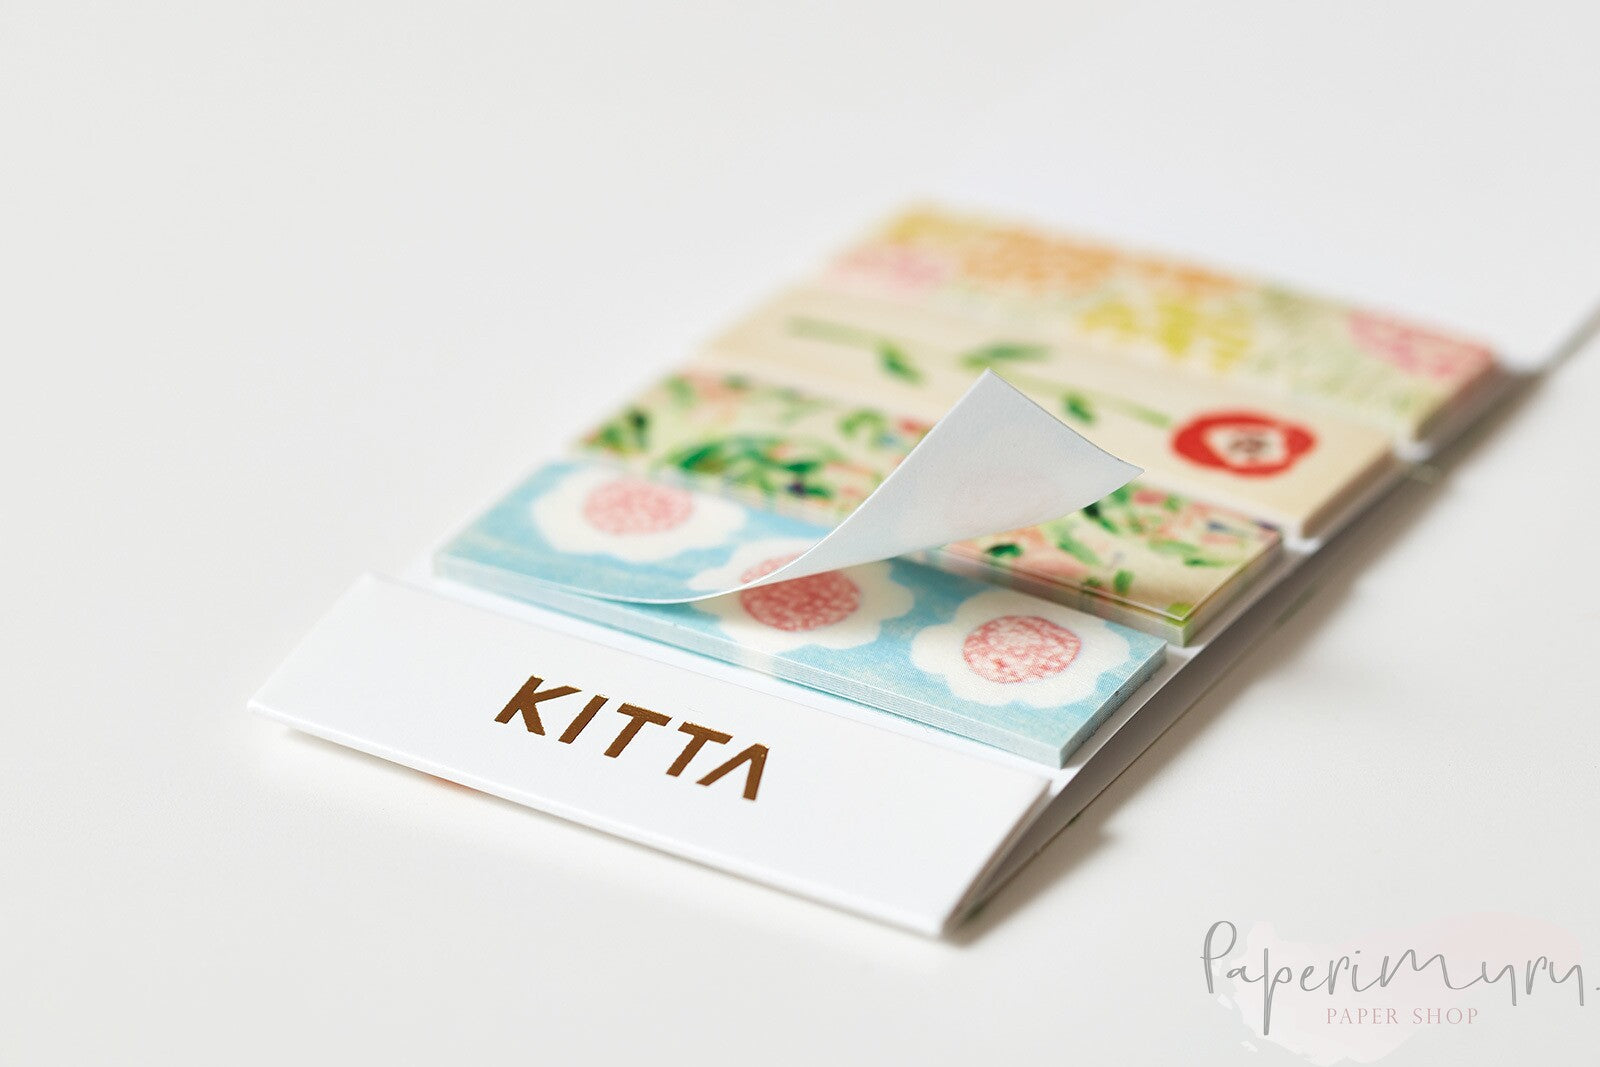 Kitta Washi - KIT060 Scene